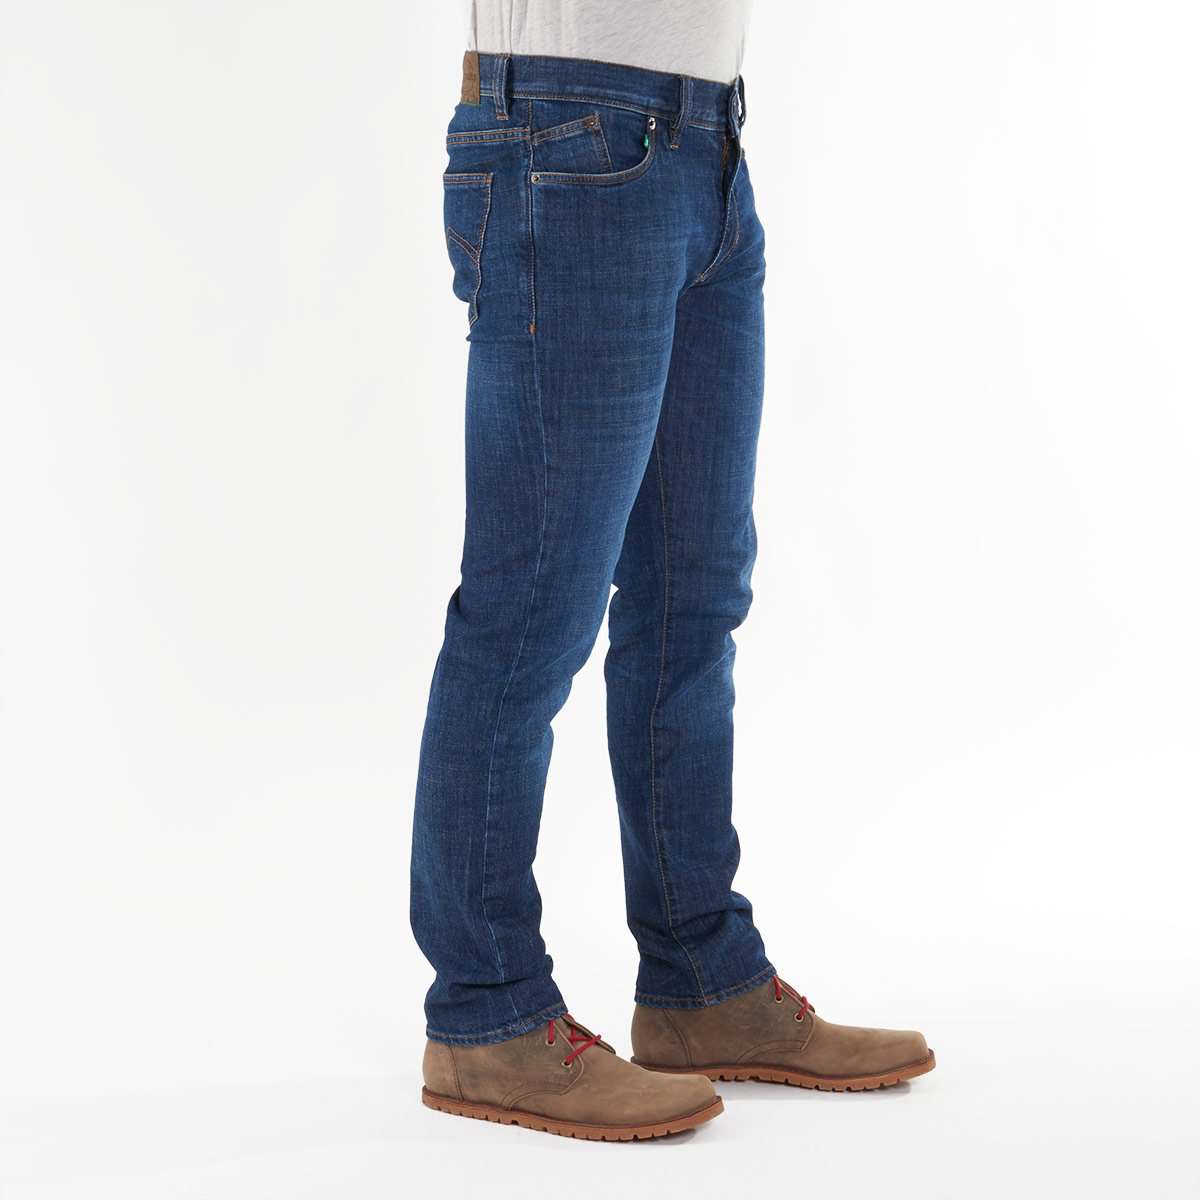 Nachhaltige Herren-Jeans von fairjeans: Slim Fit, Bio-Baumwolle, leichter Used-Look